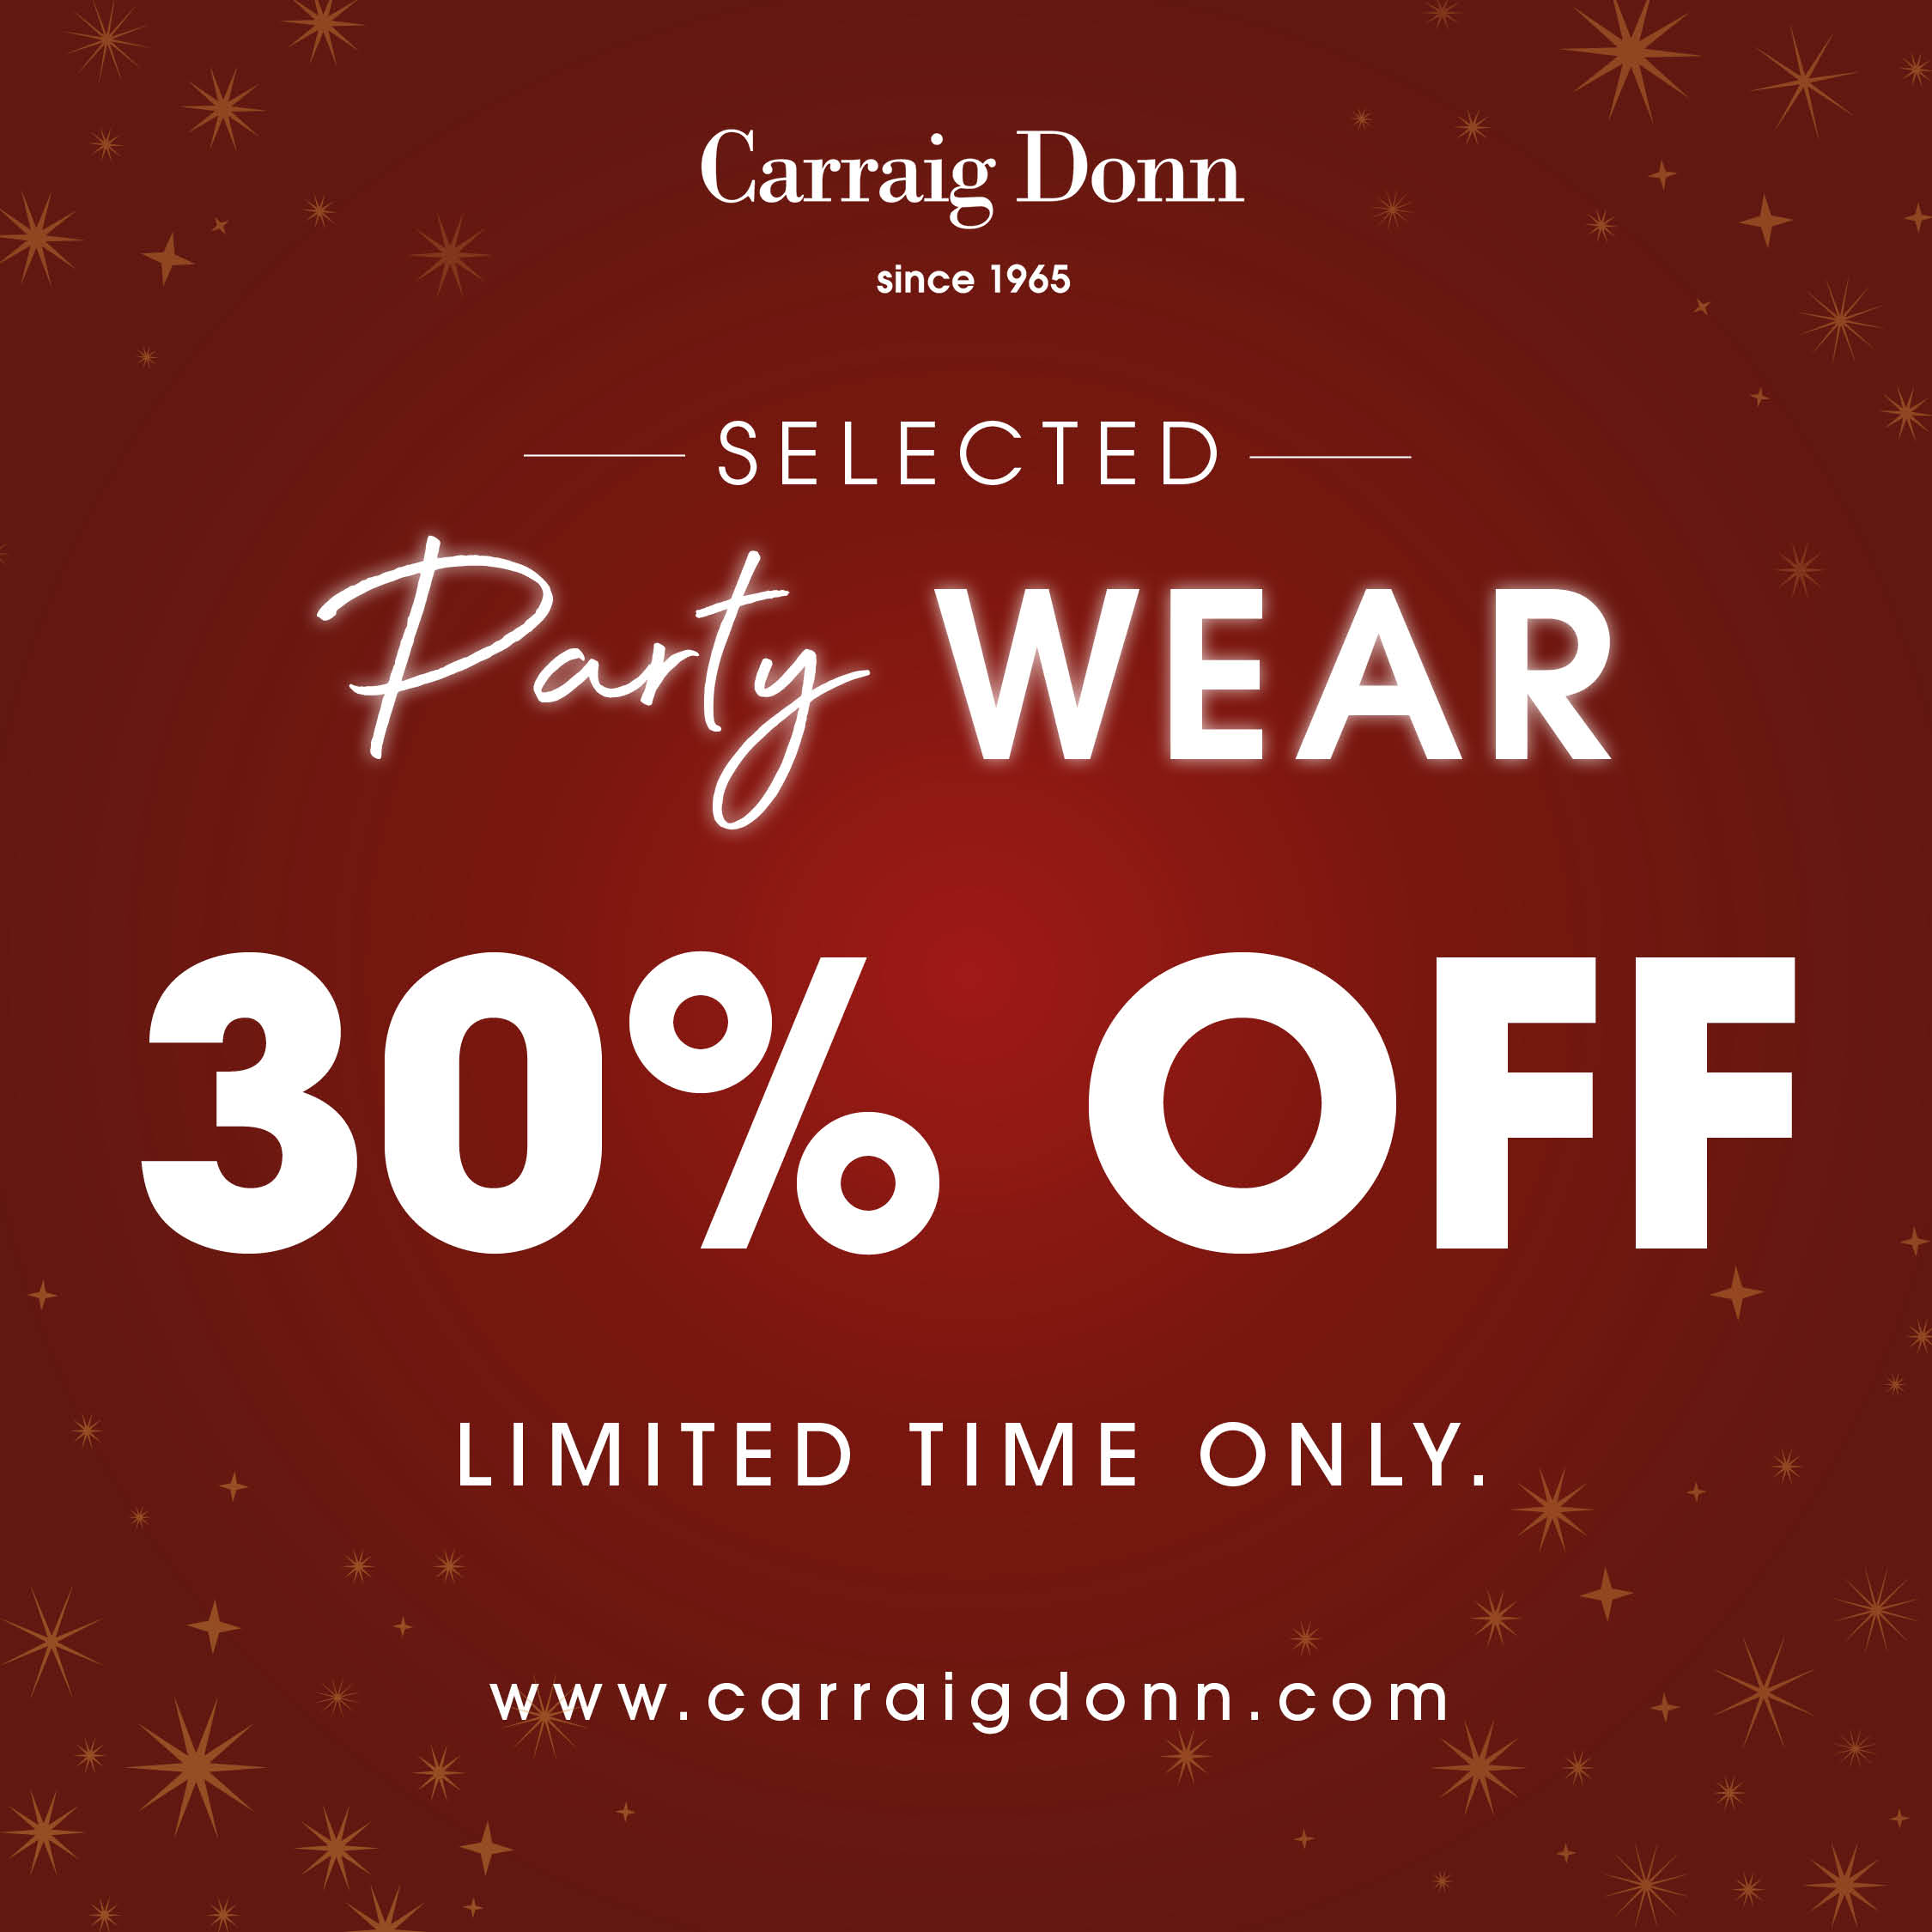 30% off PARTYWEAR* at Carraig Donn!